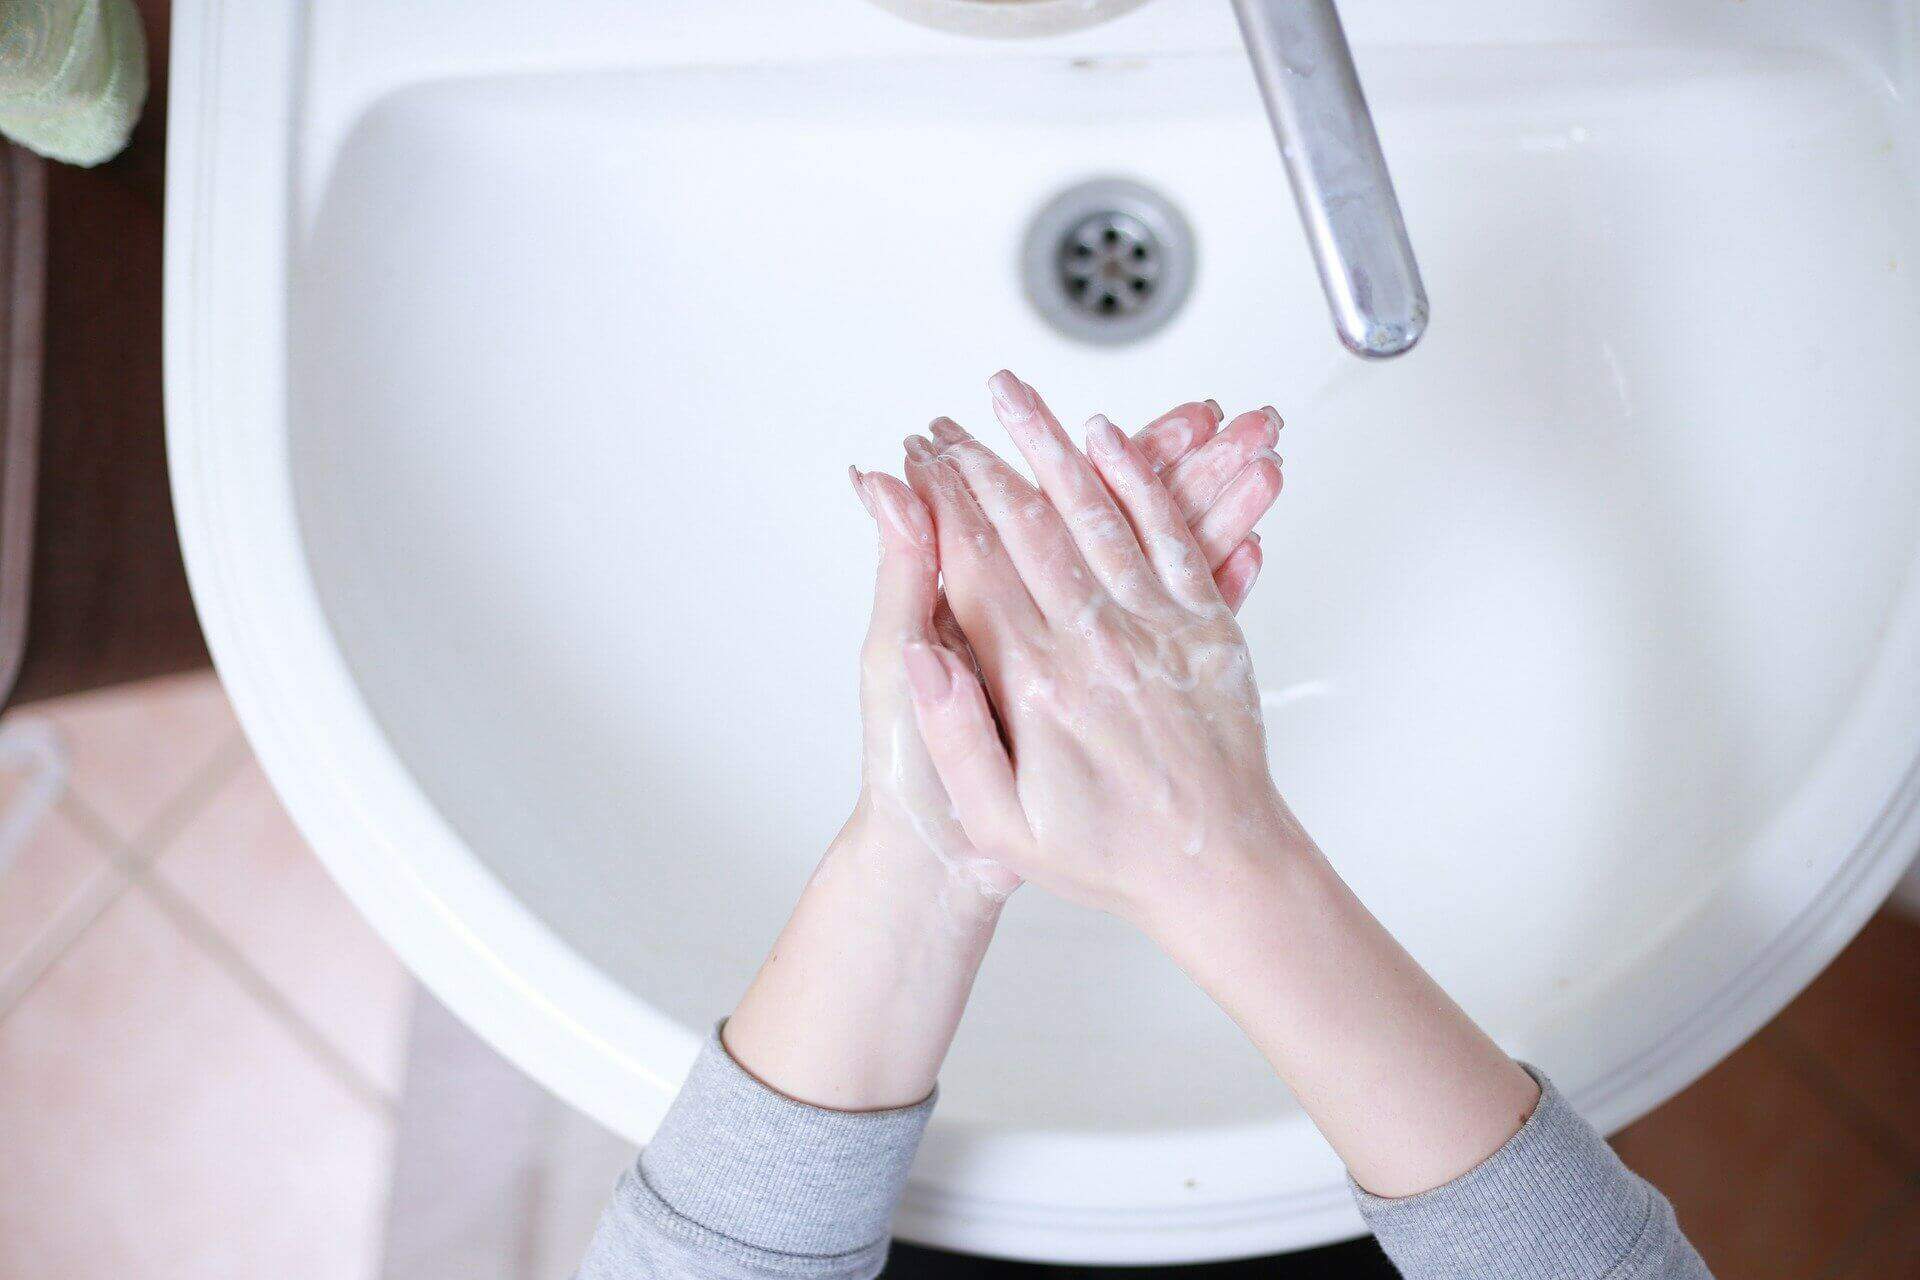 Pessoa lavando as mãos. Conteúdo sobre direito a agua, saneamento e higiene